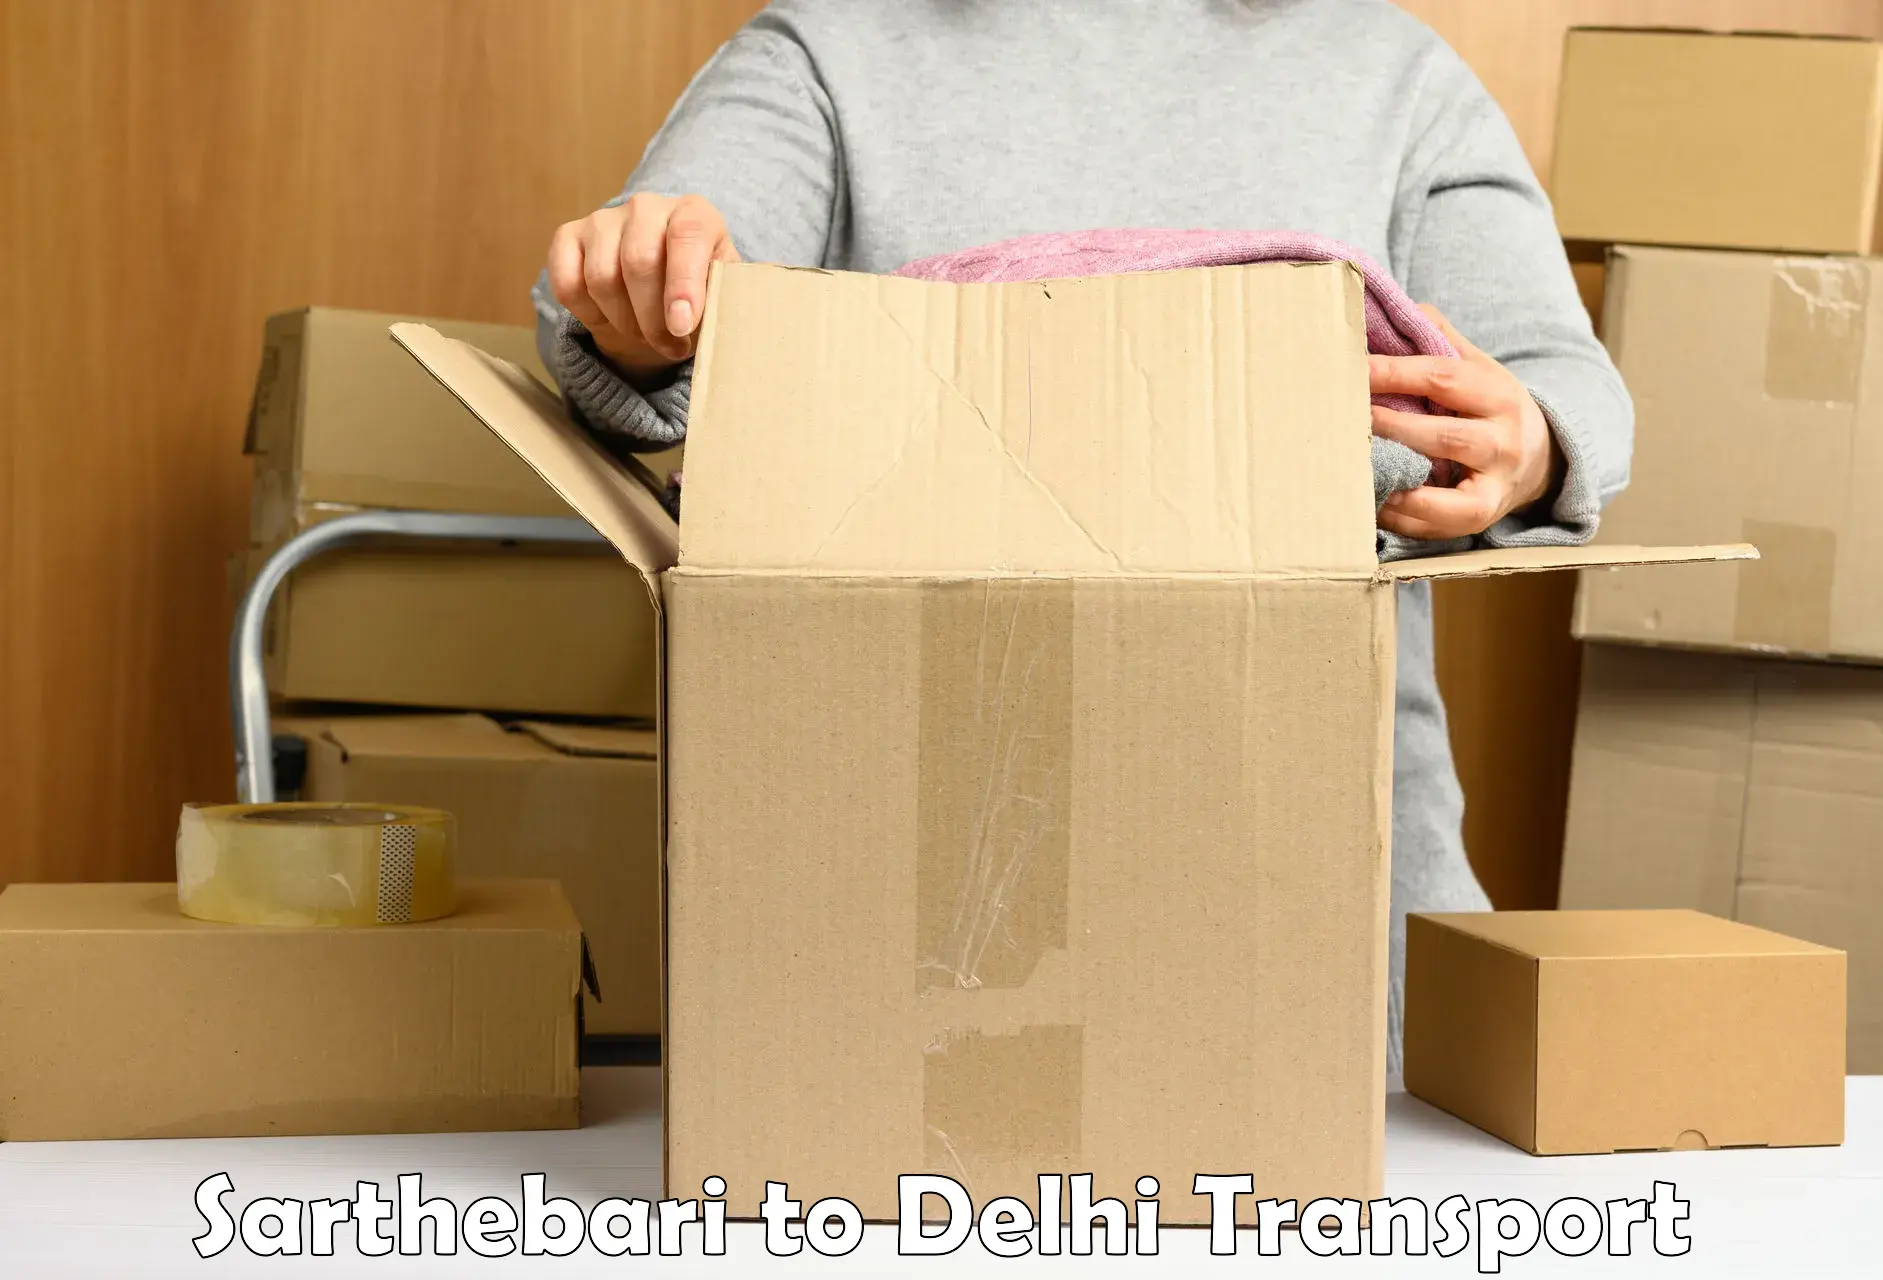 Delivery service Sarthebari to NIT Delhi